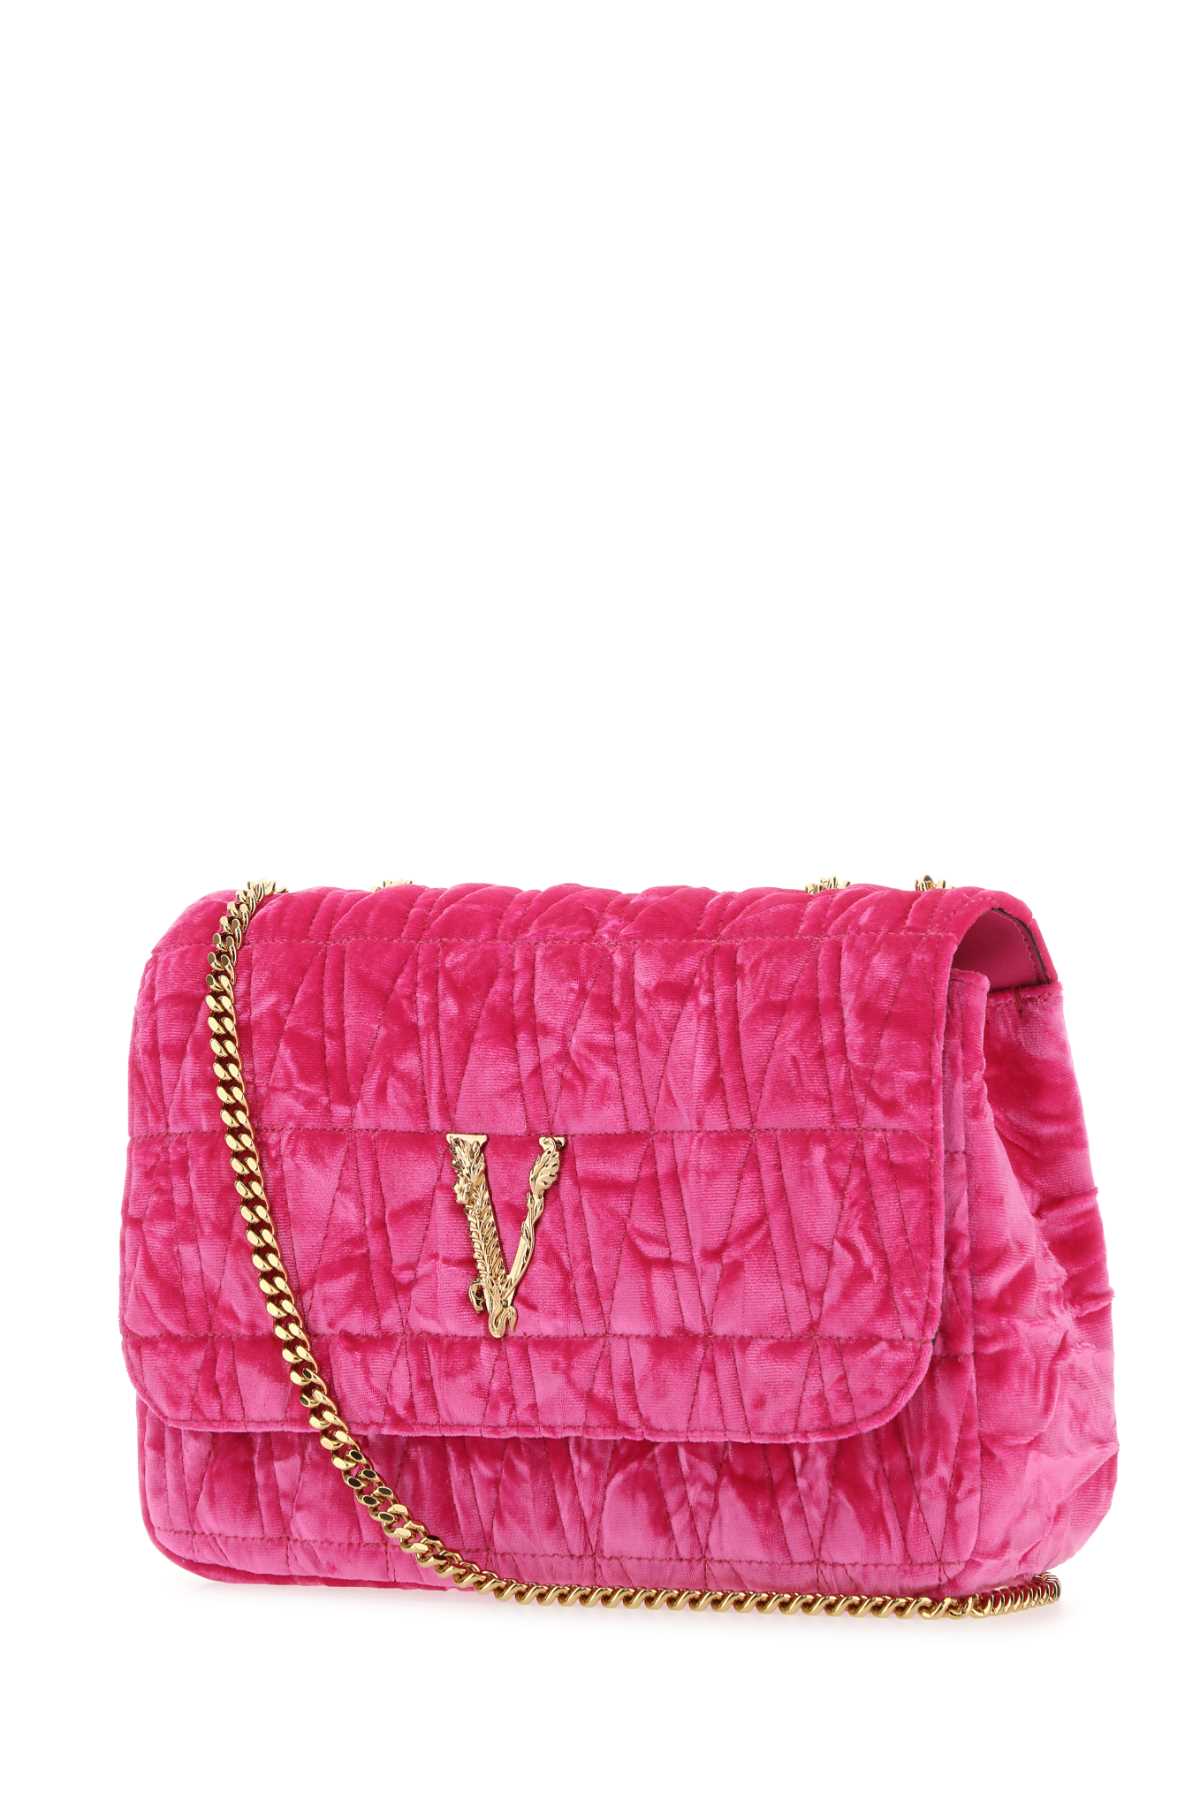 Versace Fuchsia Velvet Virtus Shoulder Bag In Glossypinkgold